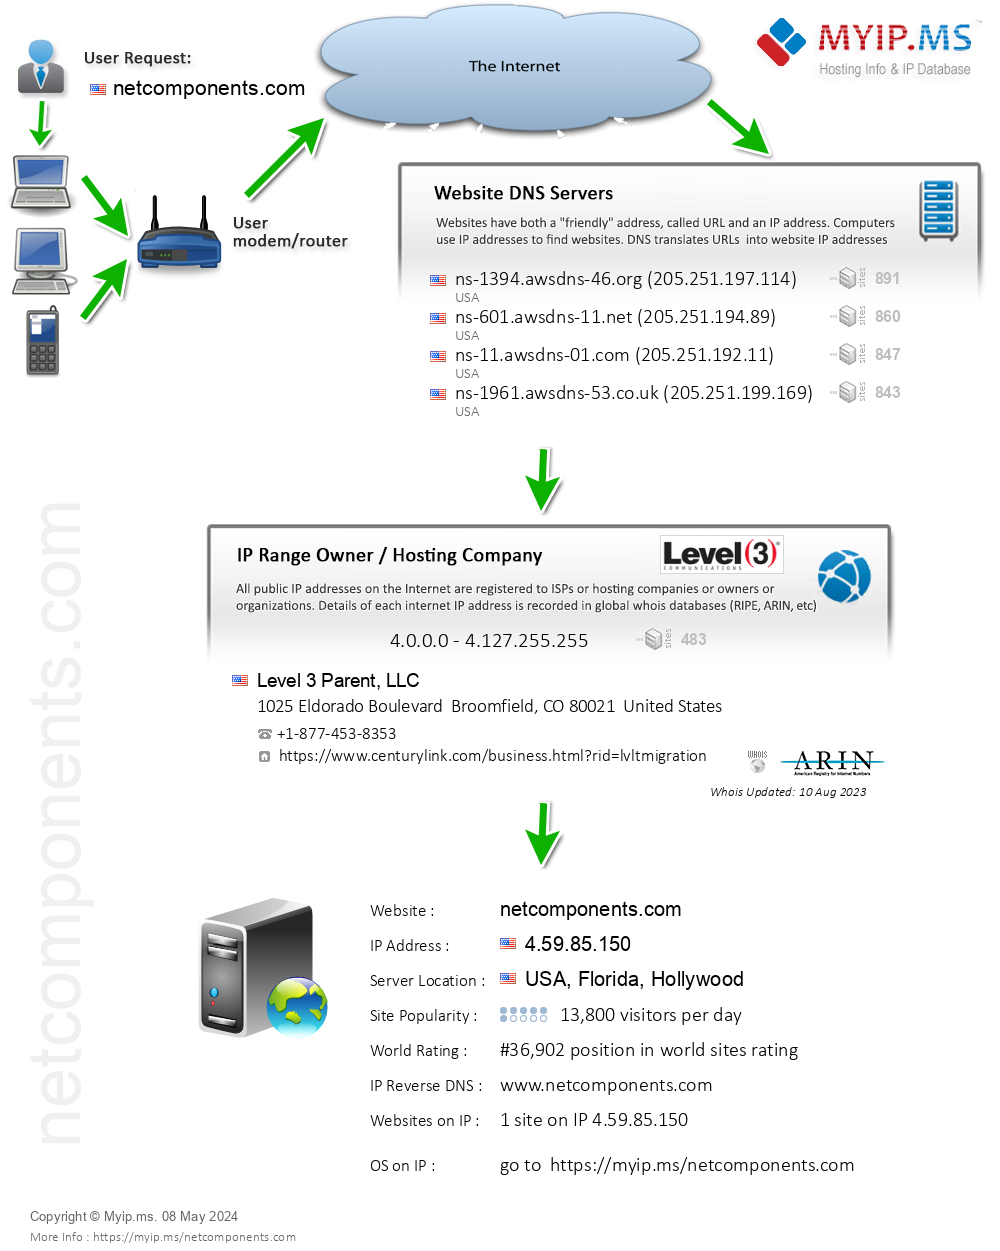 Netcomponents.com - Website Hosting Visual IP Diagram